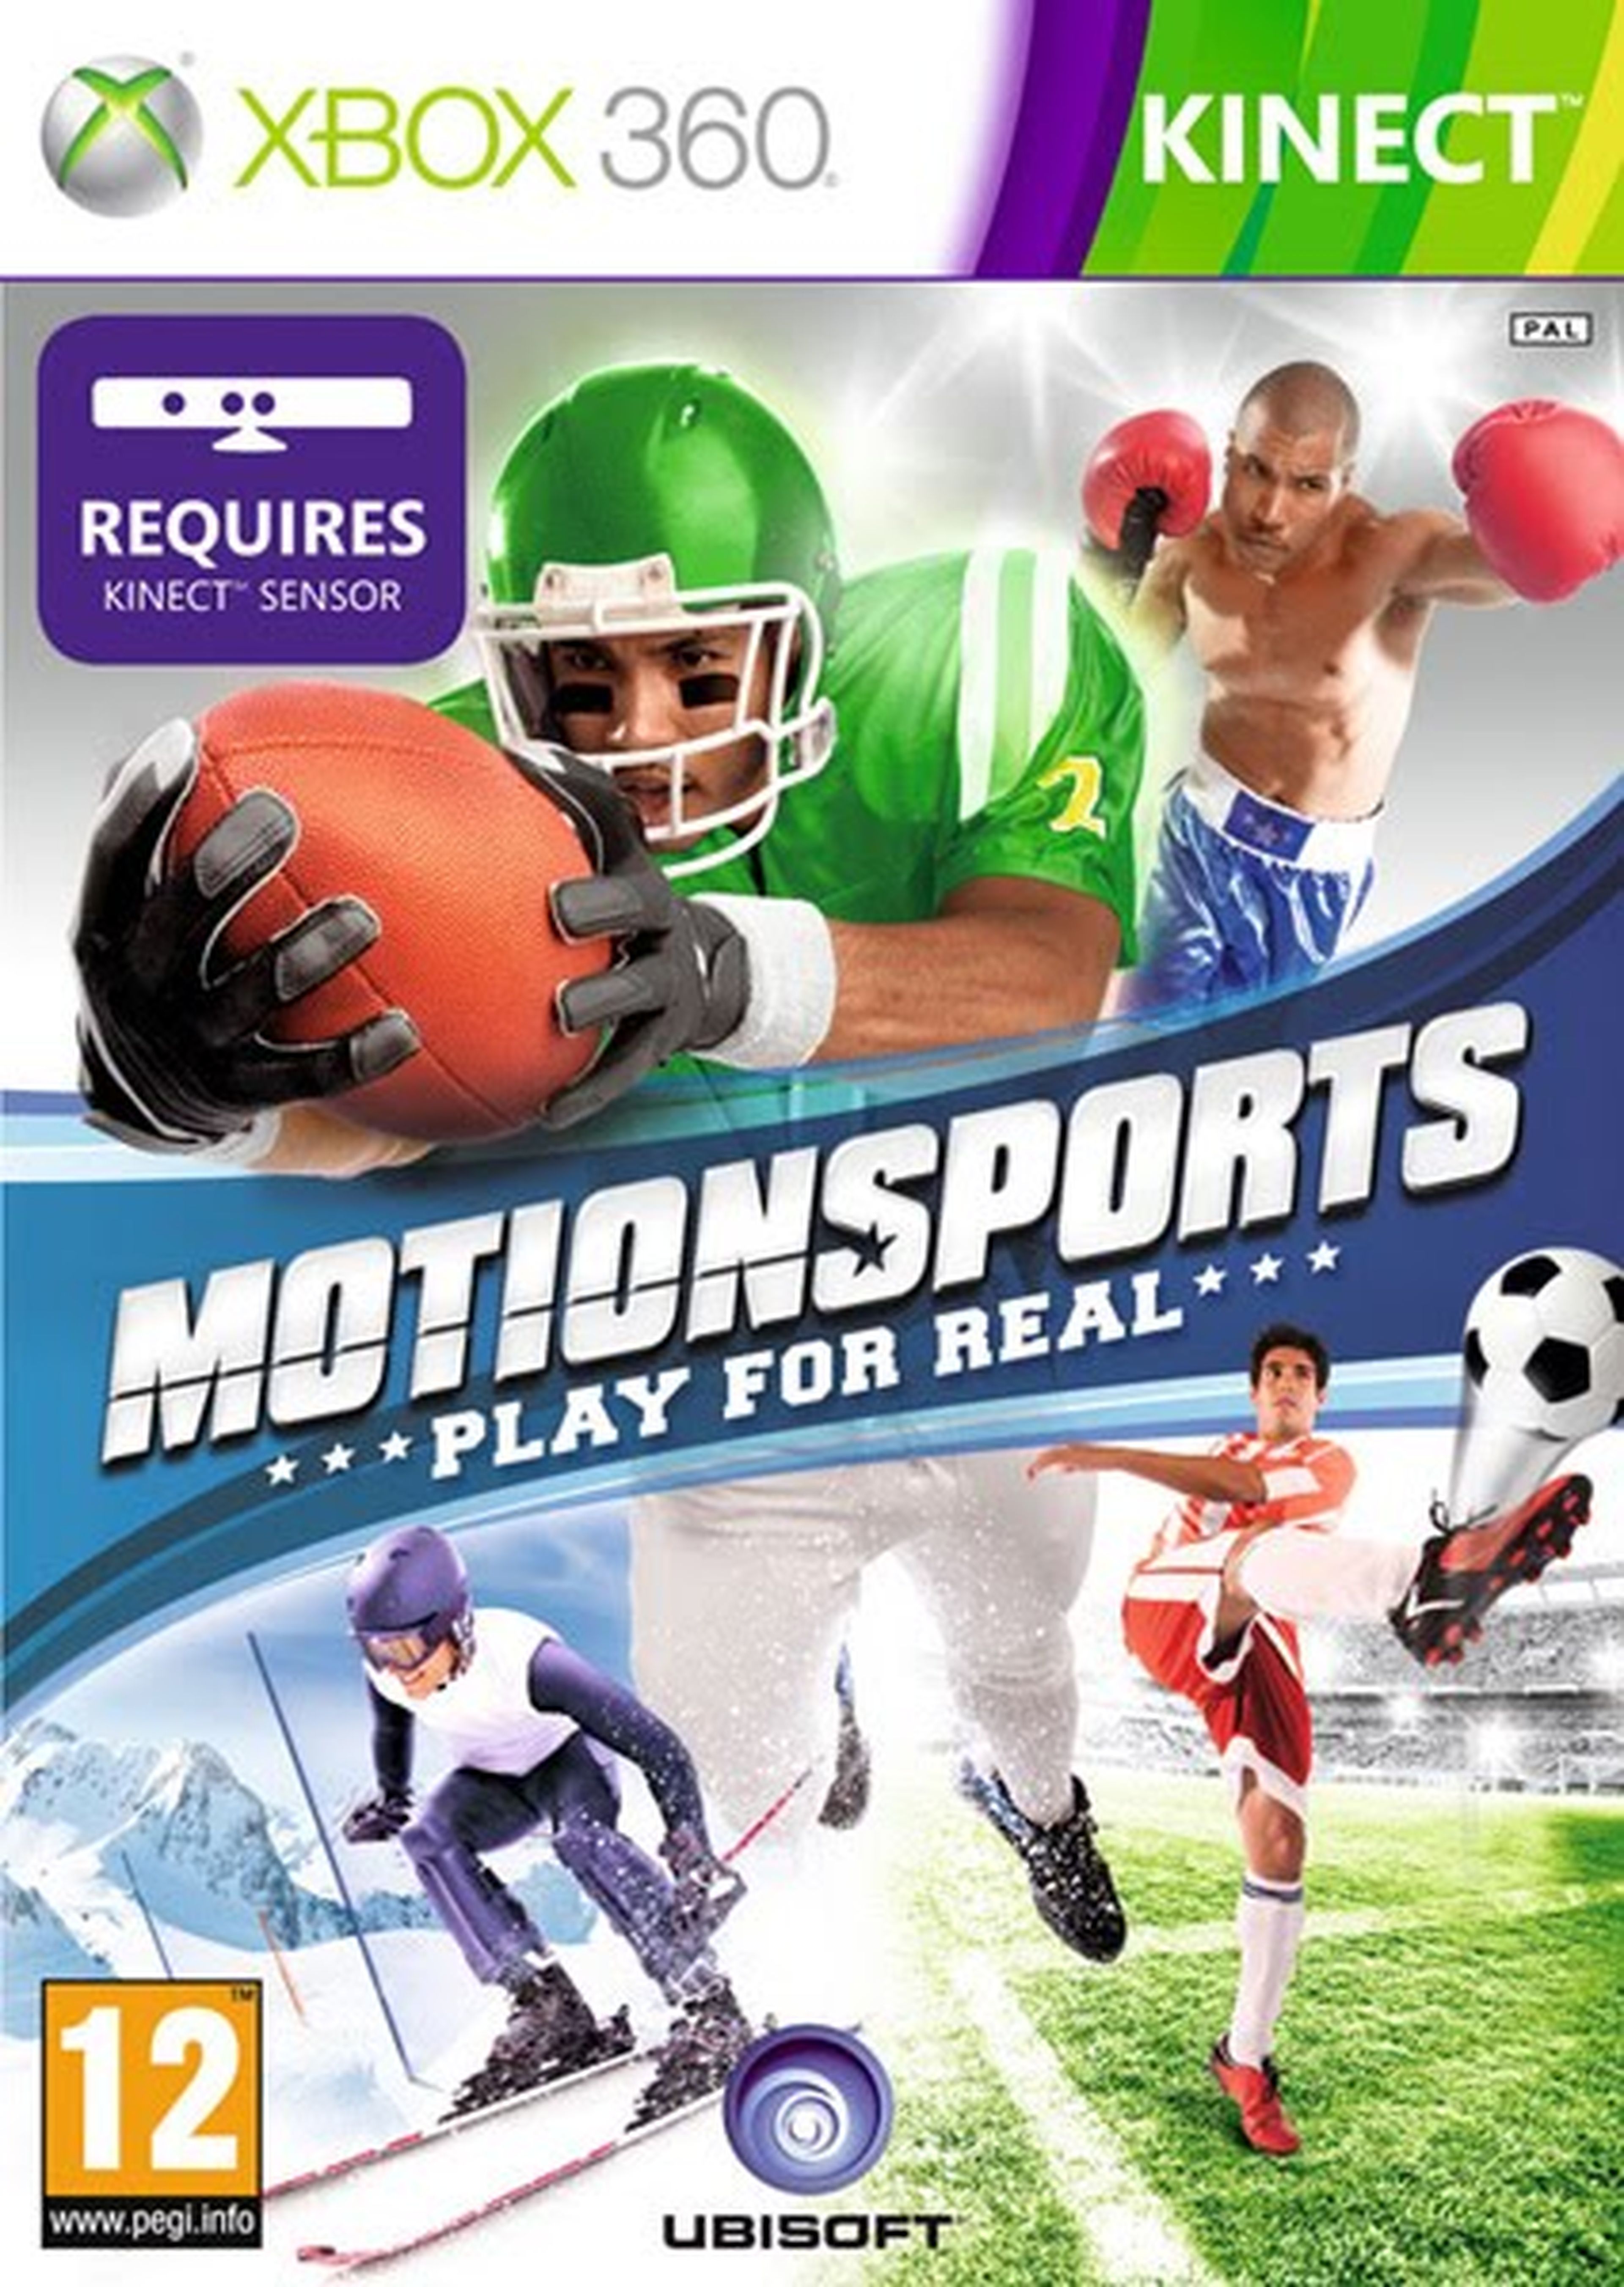 Xbox kinect sport. Kinect Sports Xbox 360. Kinect Sports Xbox 360 коробка. Kinect motionsports Xbox 360. Kinect Sports Xbox 360 обложка.